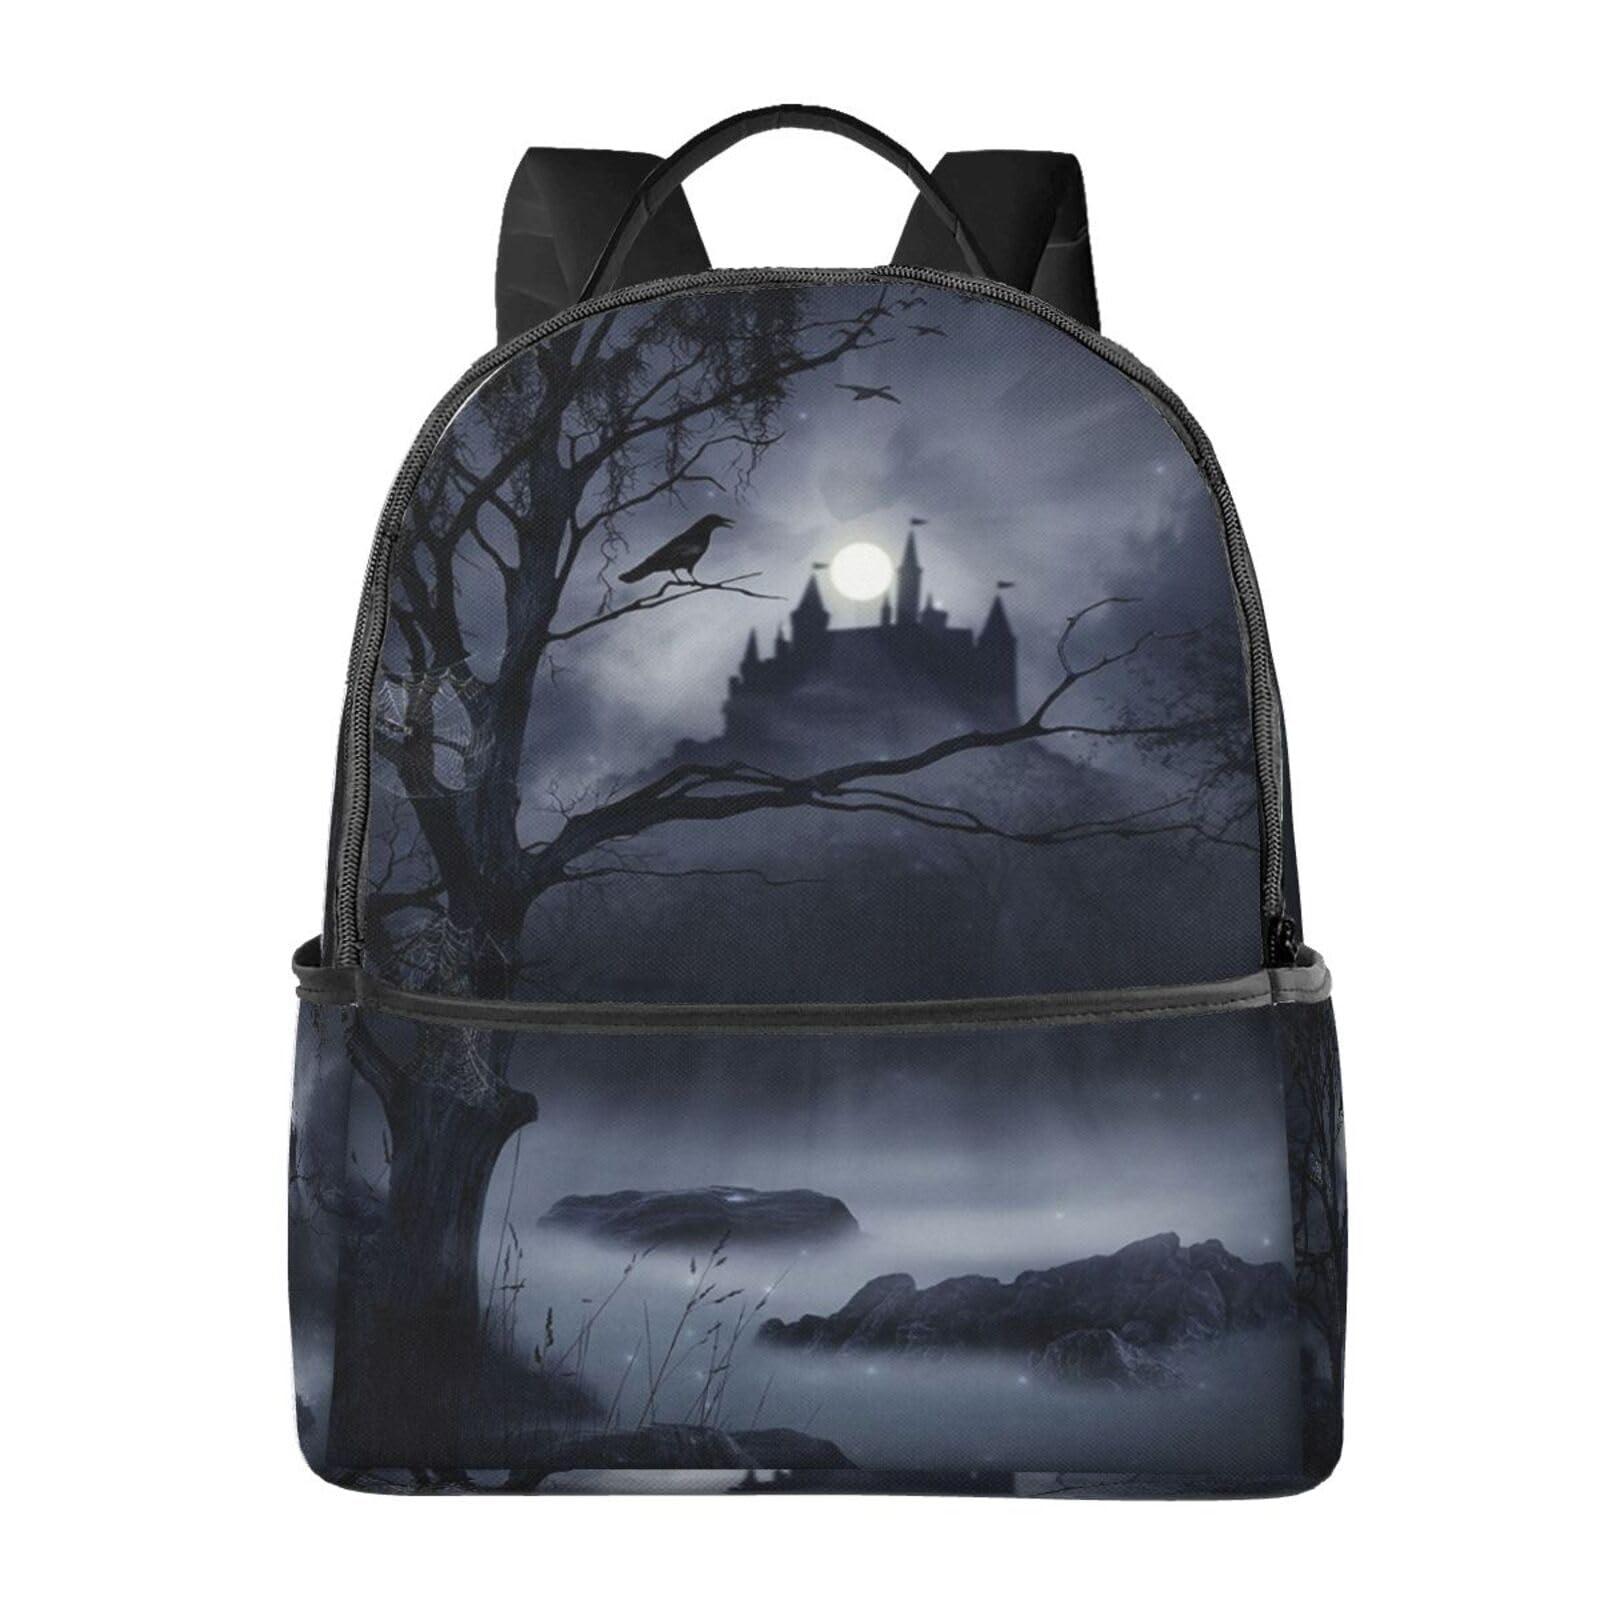 送料無料EVANEM Laptop Backpack Lightweight Travel Backpack Shoulders Bag Night Garden Moon Light Printed For Travel Men W